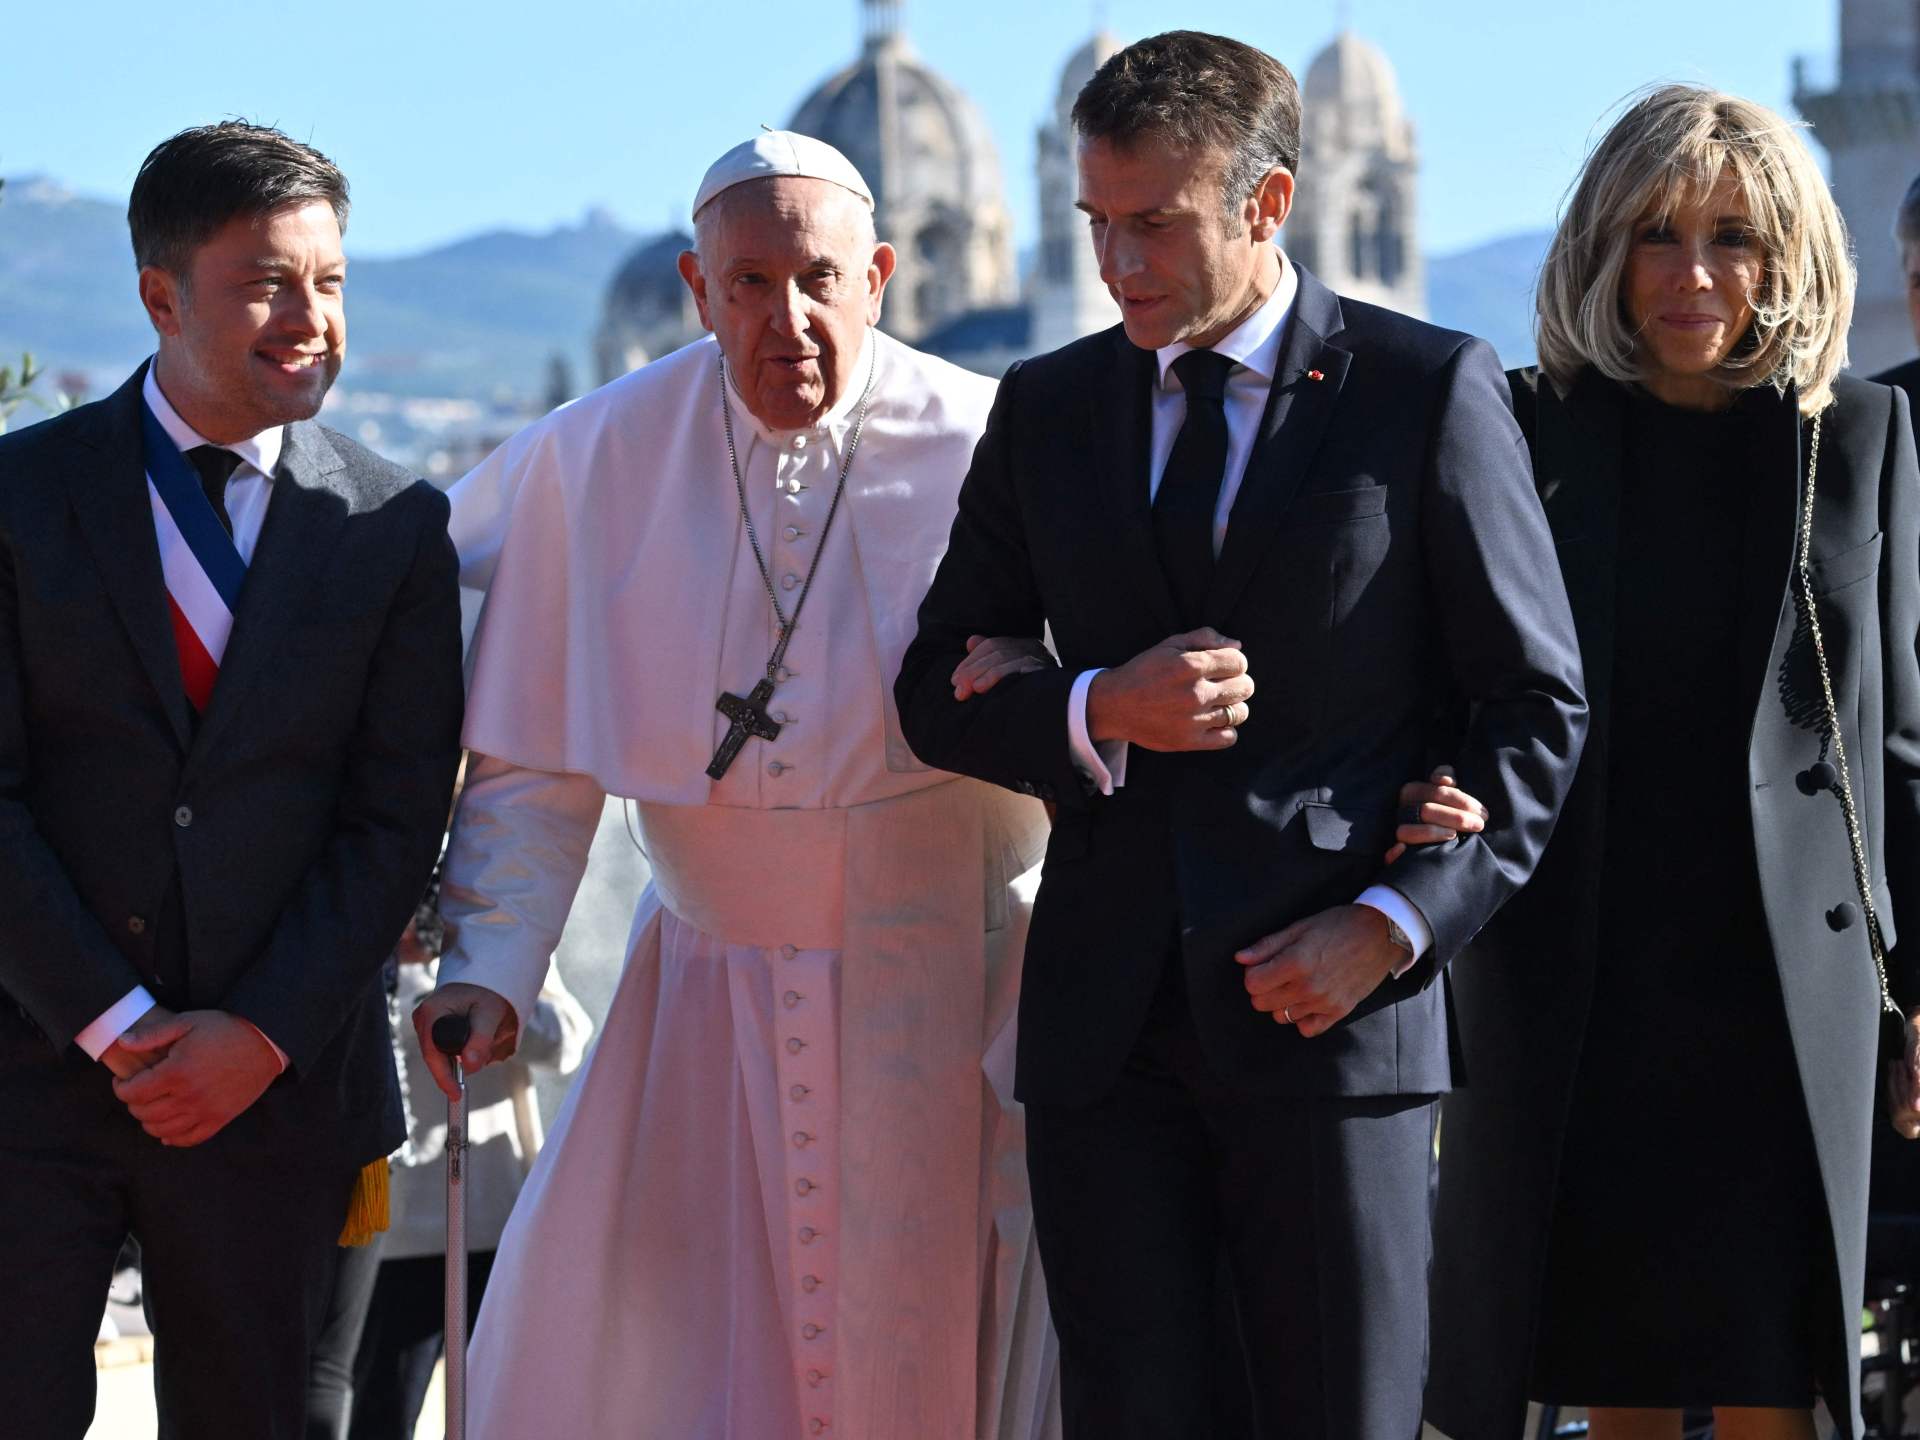 La présence de Macron à la messe pour le pape suscite une polémique sur la laïcité française